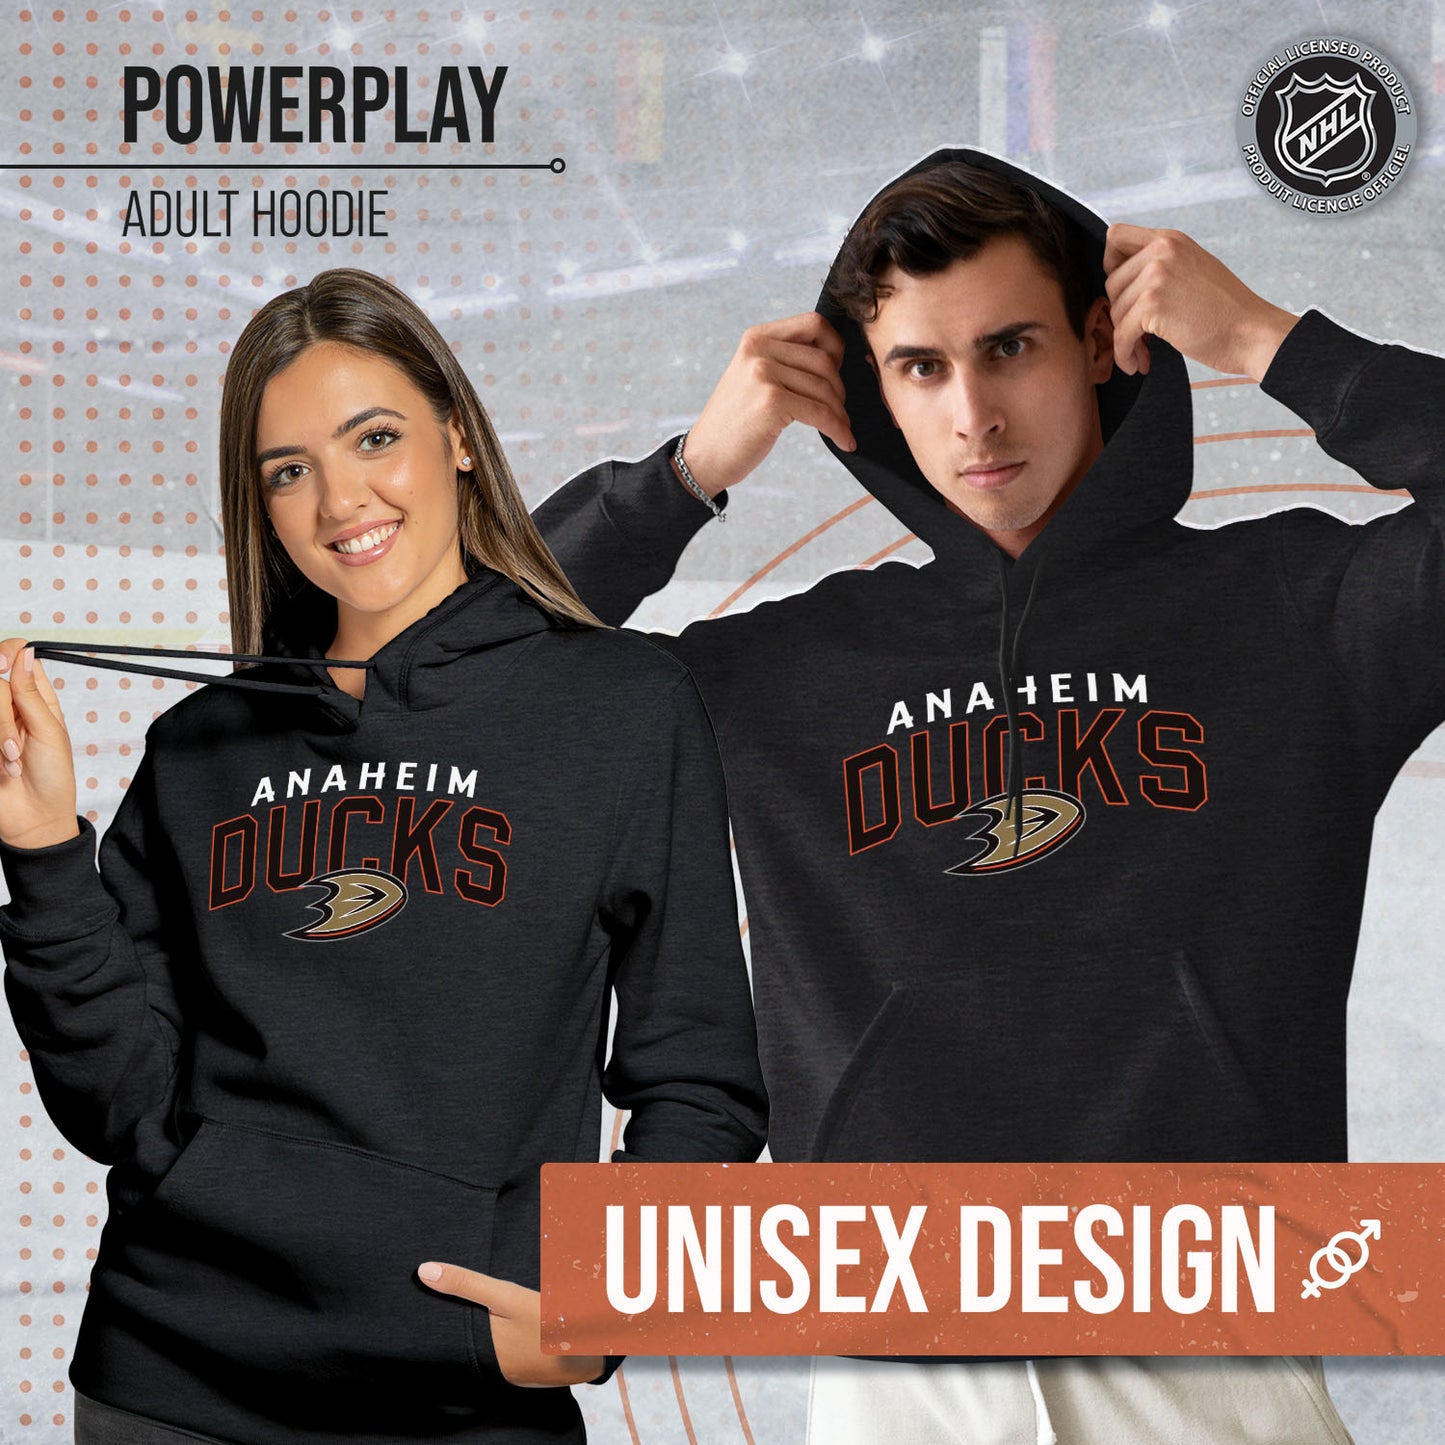 Anaheim Ducks NHL Adult Unisex Powerplay Hooded Sweatshirt - Black Heather